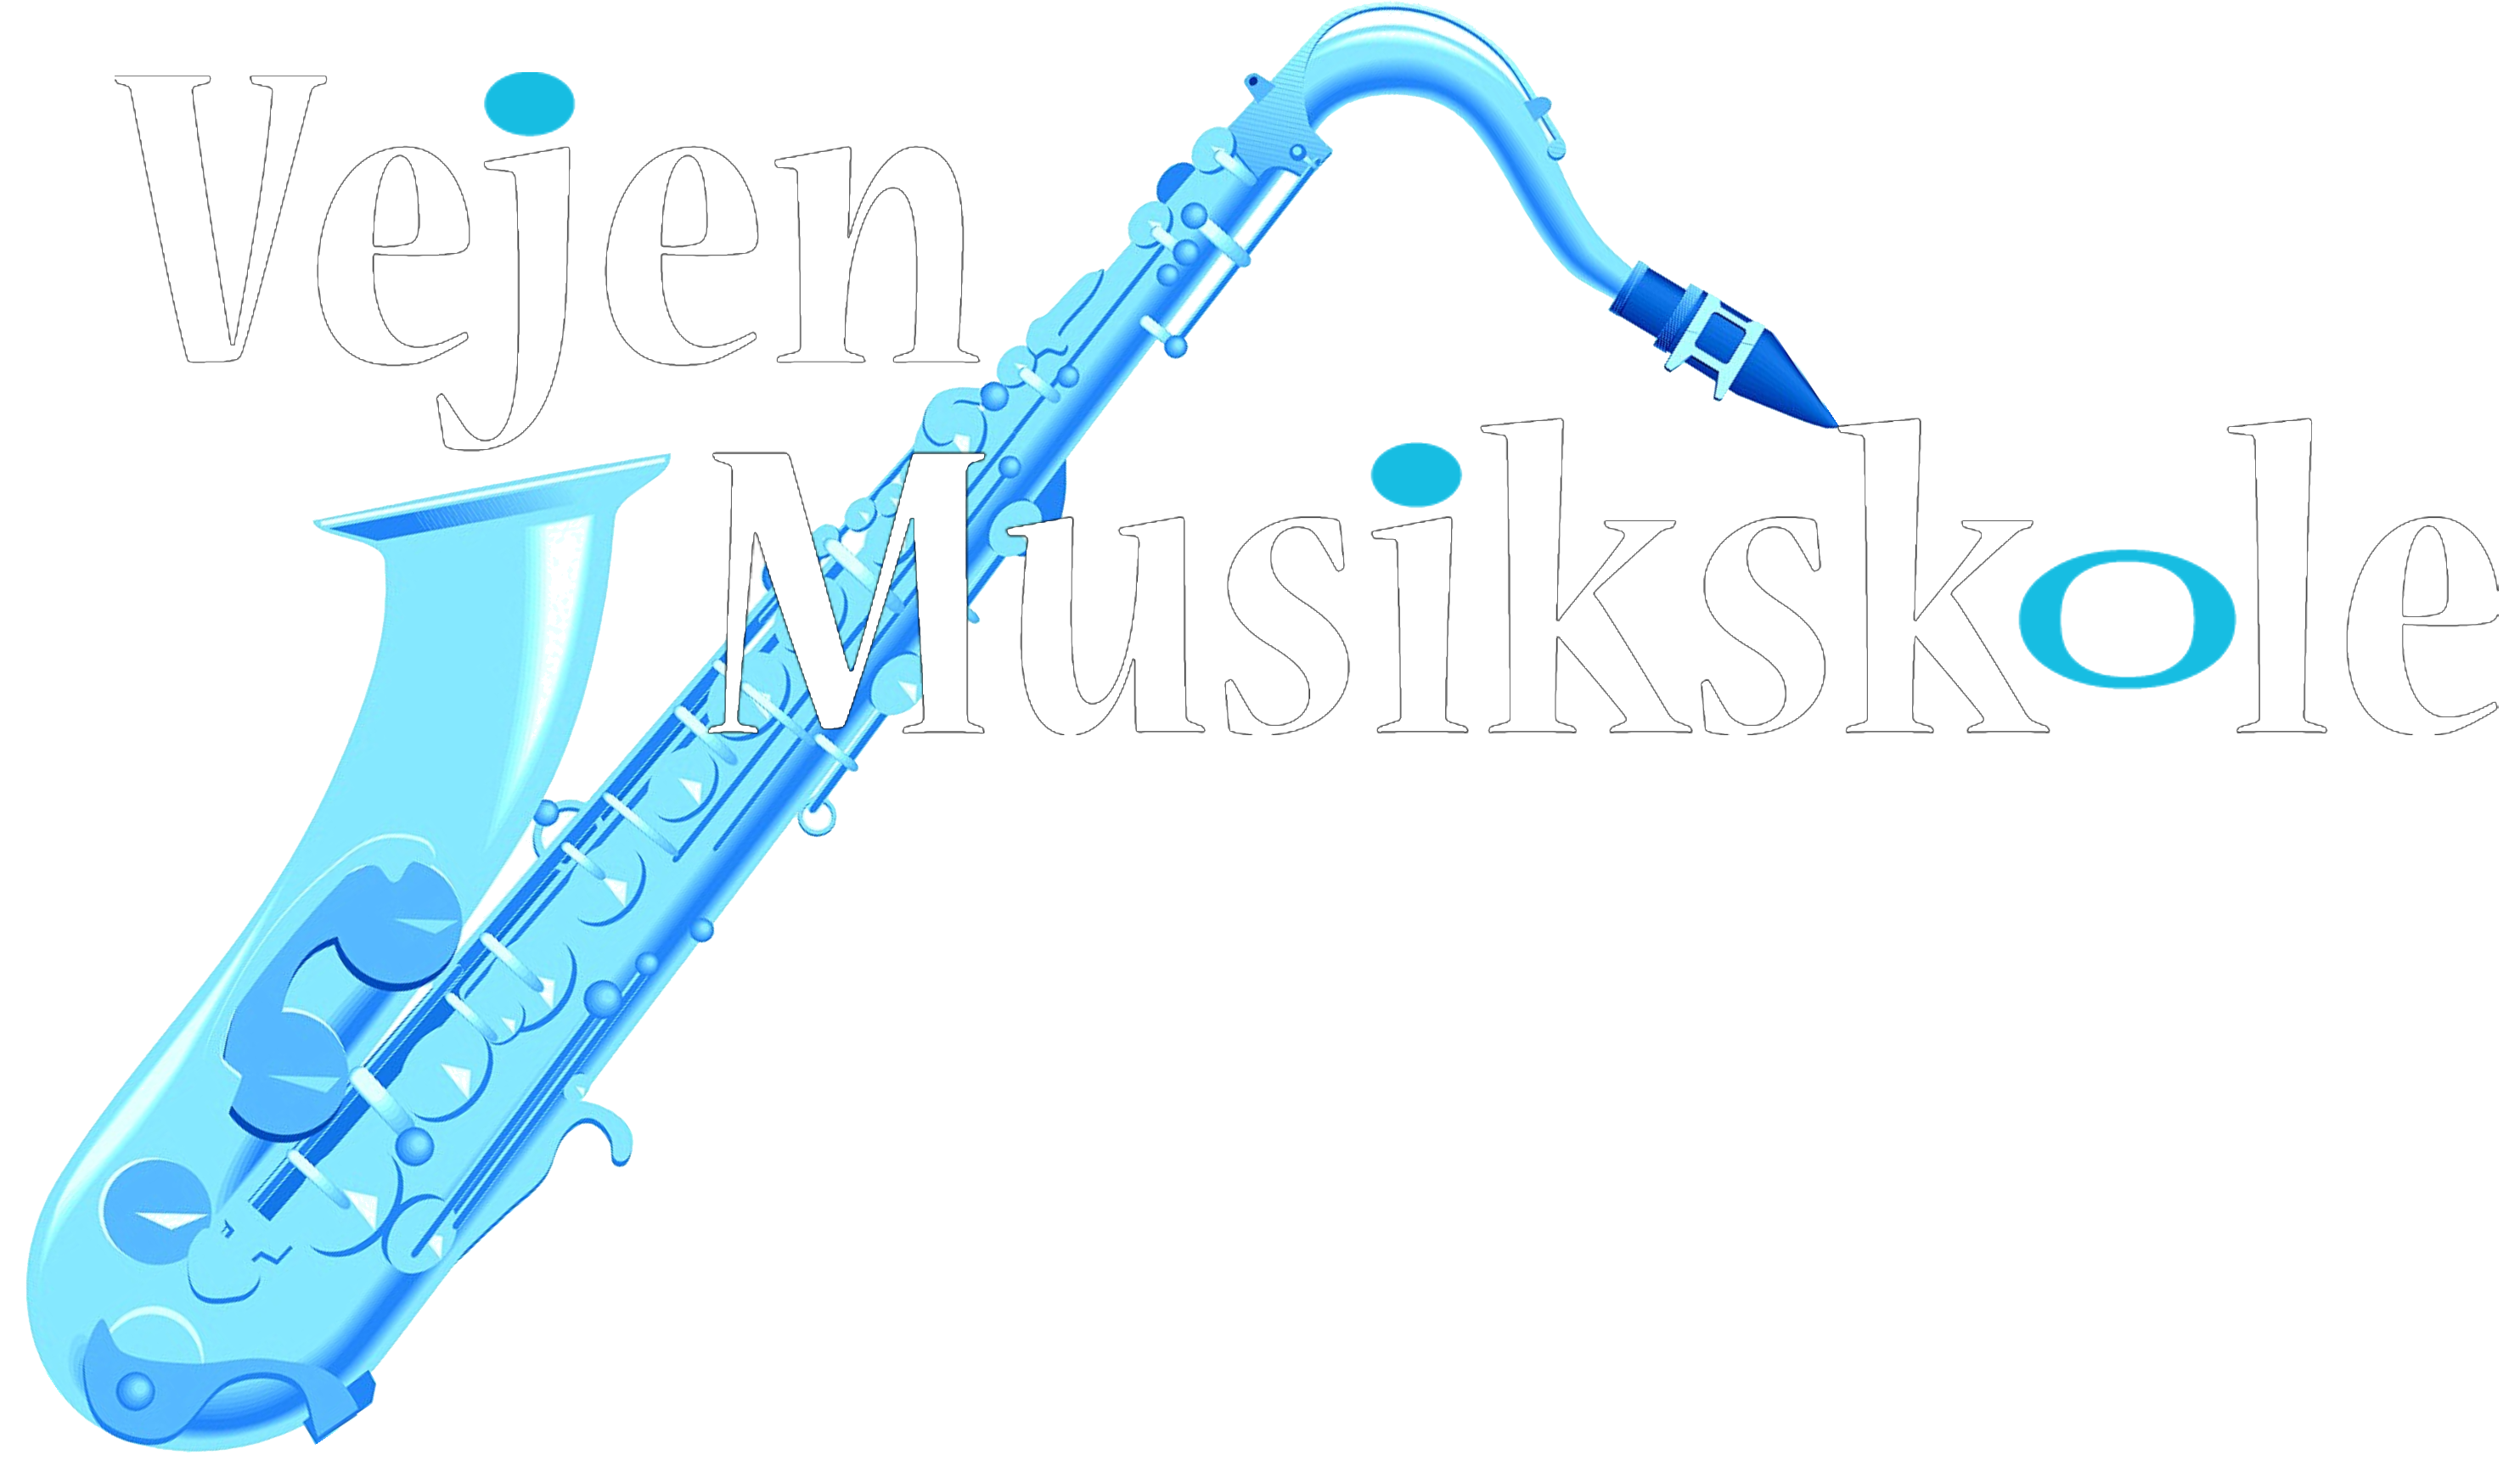 Vejen-Musikskole-logo2